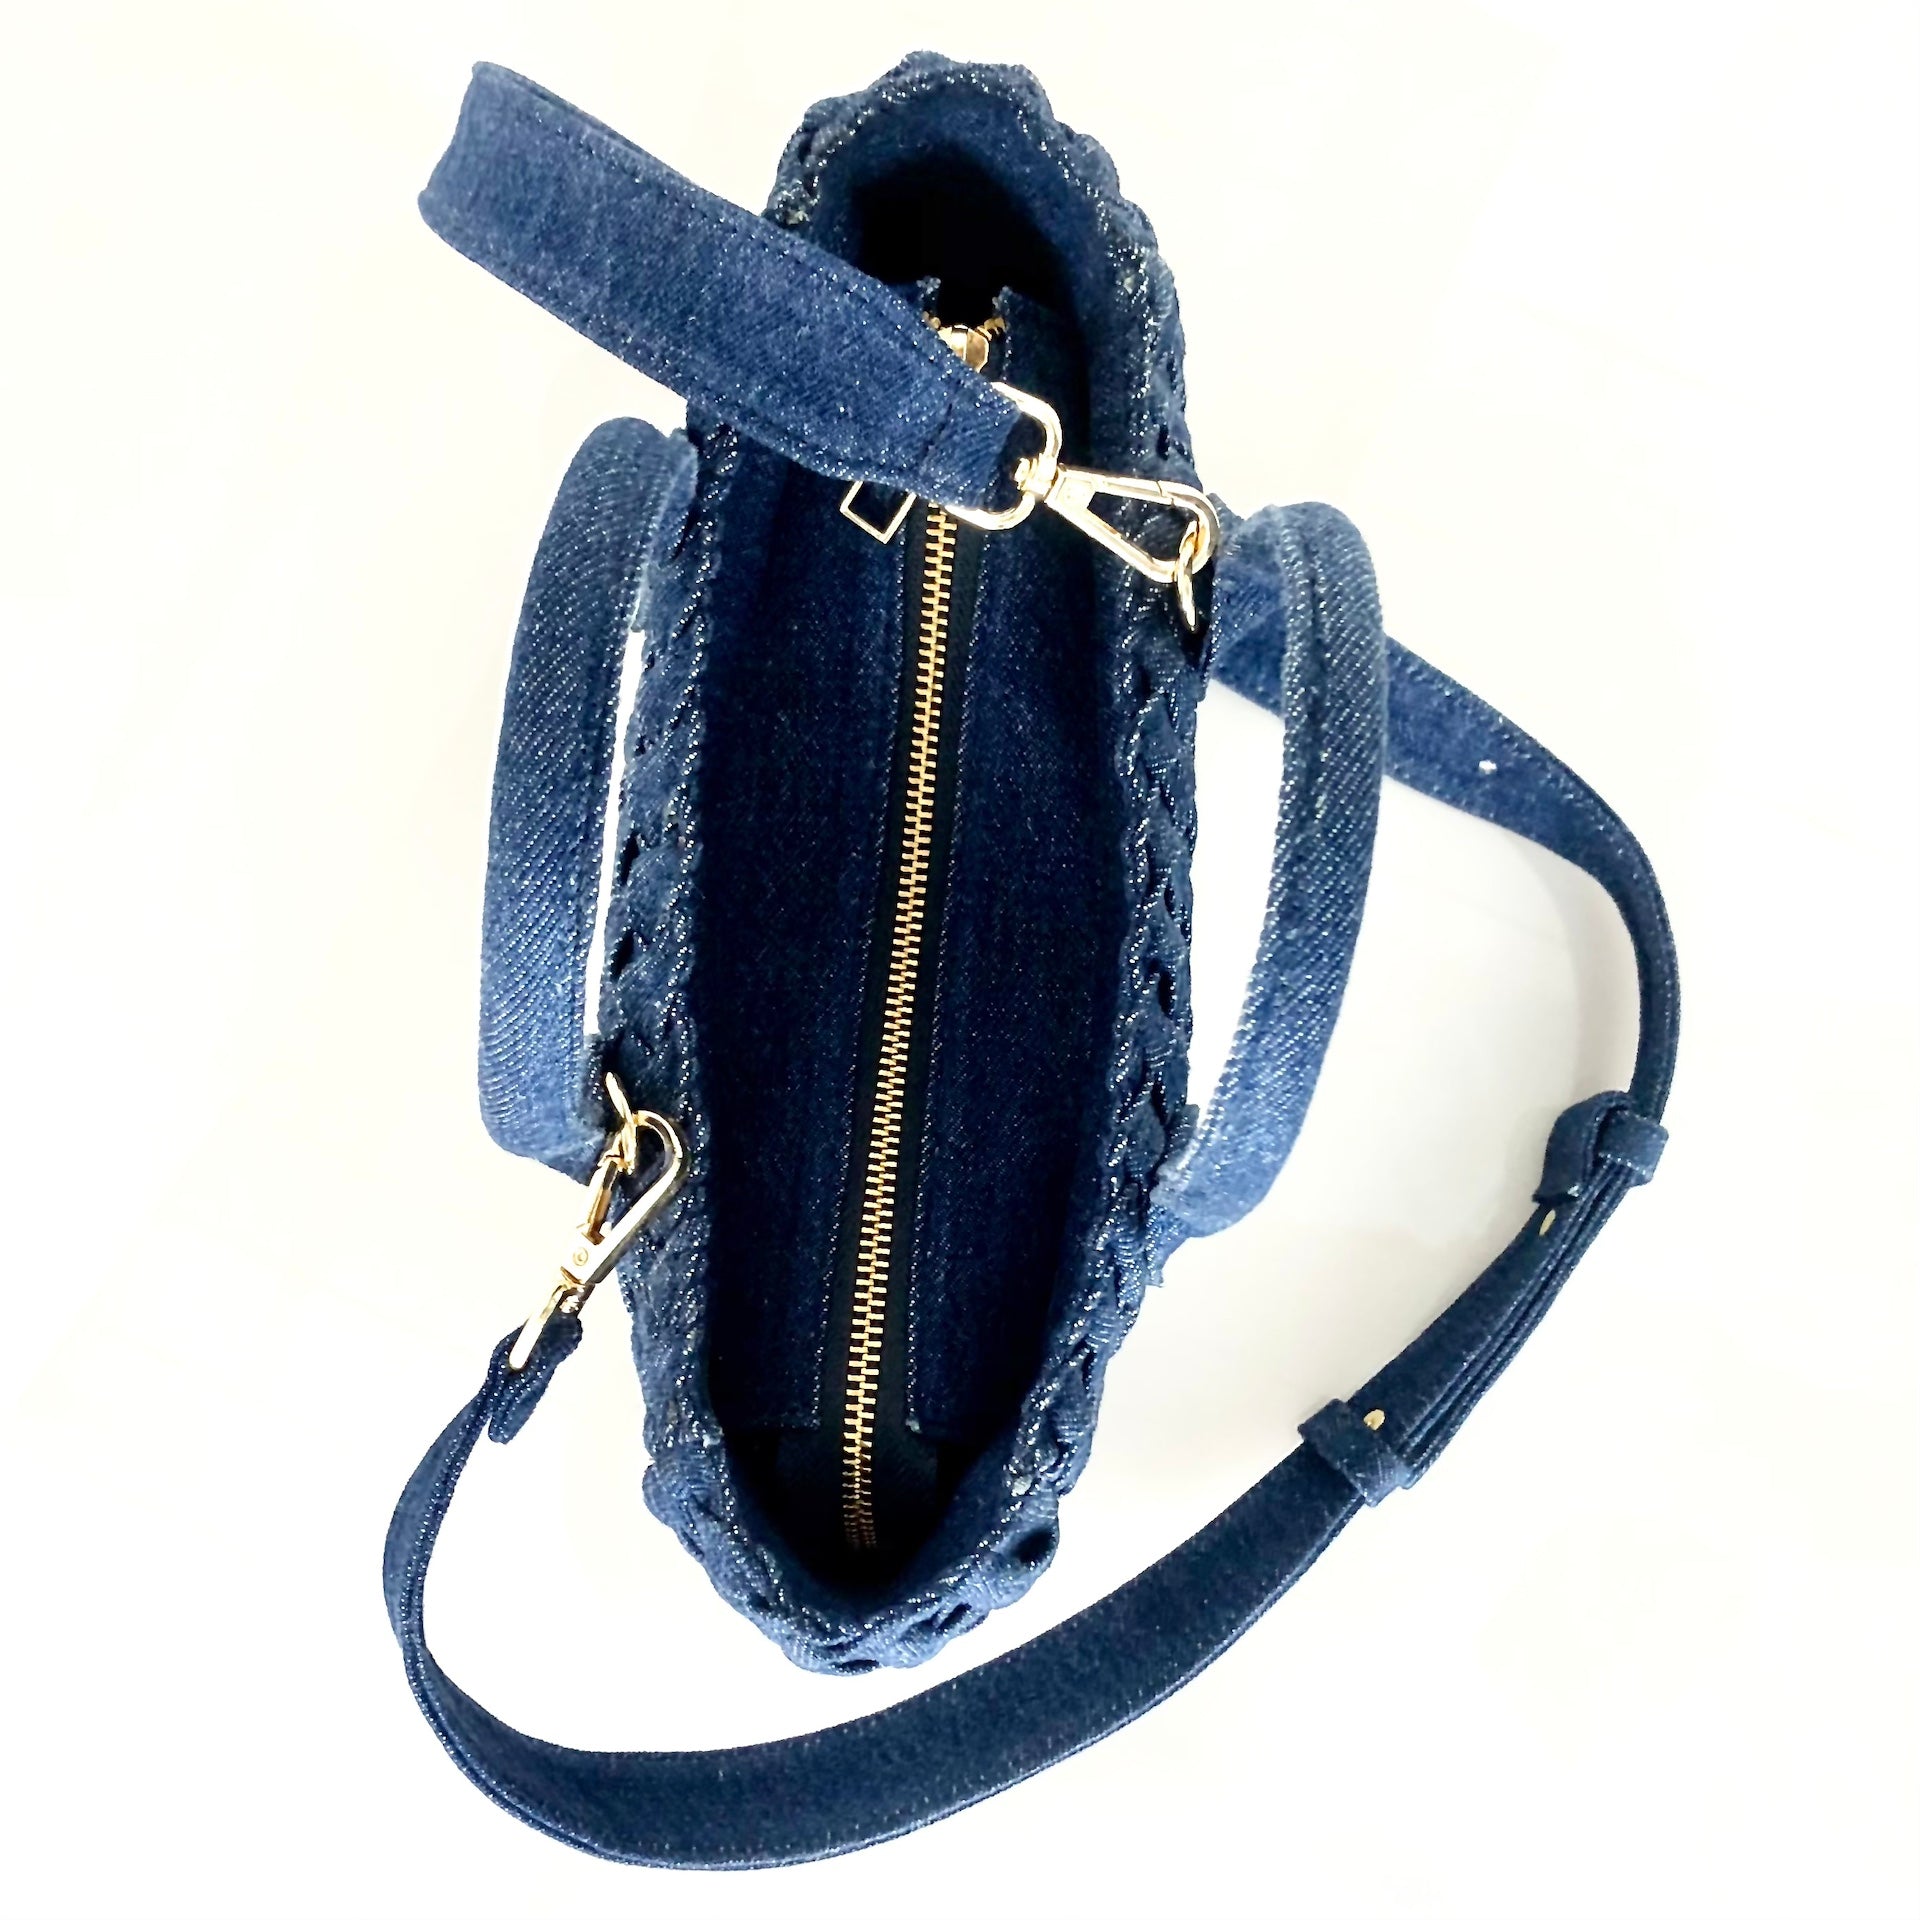 Die Handbag Cabas Tresse Mini von LABEL17 mit Reißverschluss und abnehmbarem Schulterriemen ist aus Denim gefertigt und sorgfältig von Hand geflochten.